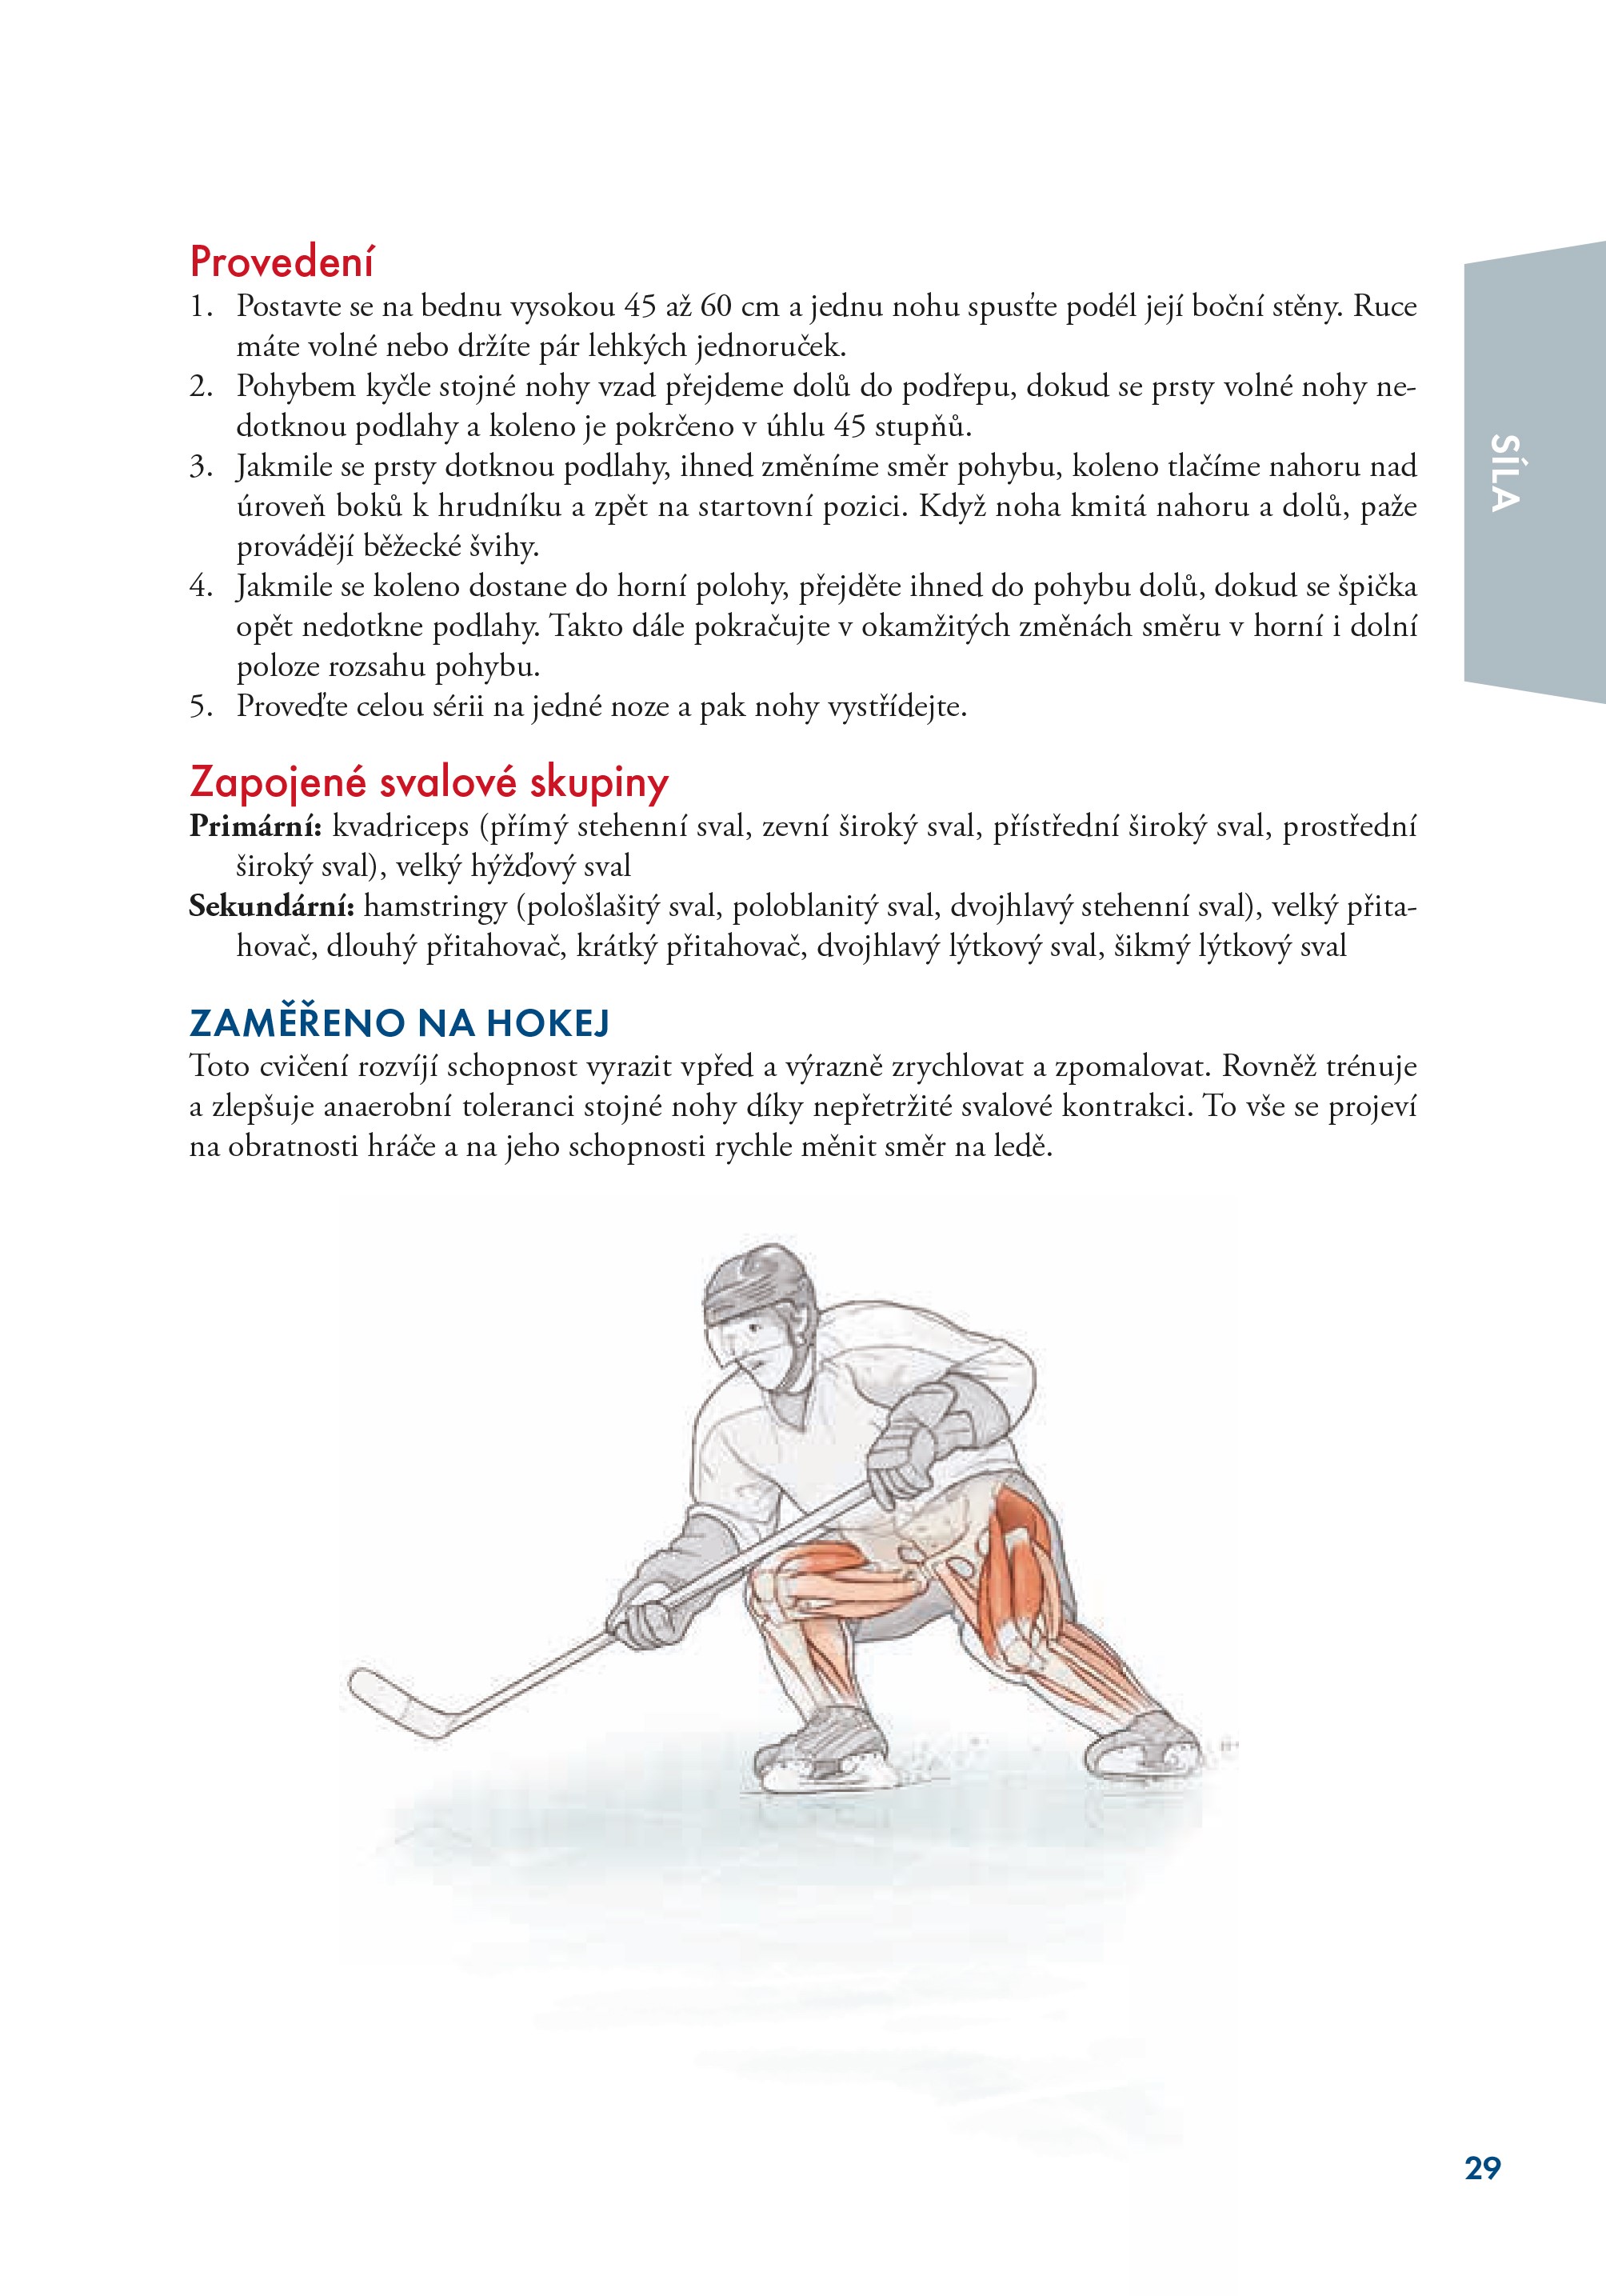 Hokej - anatomie